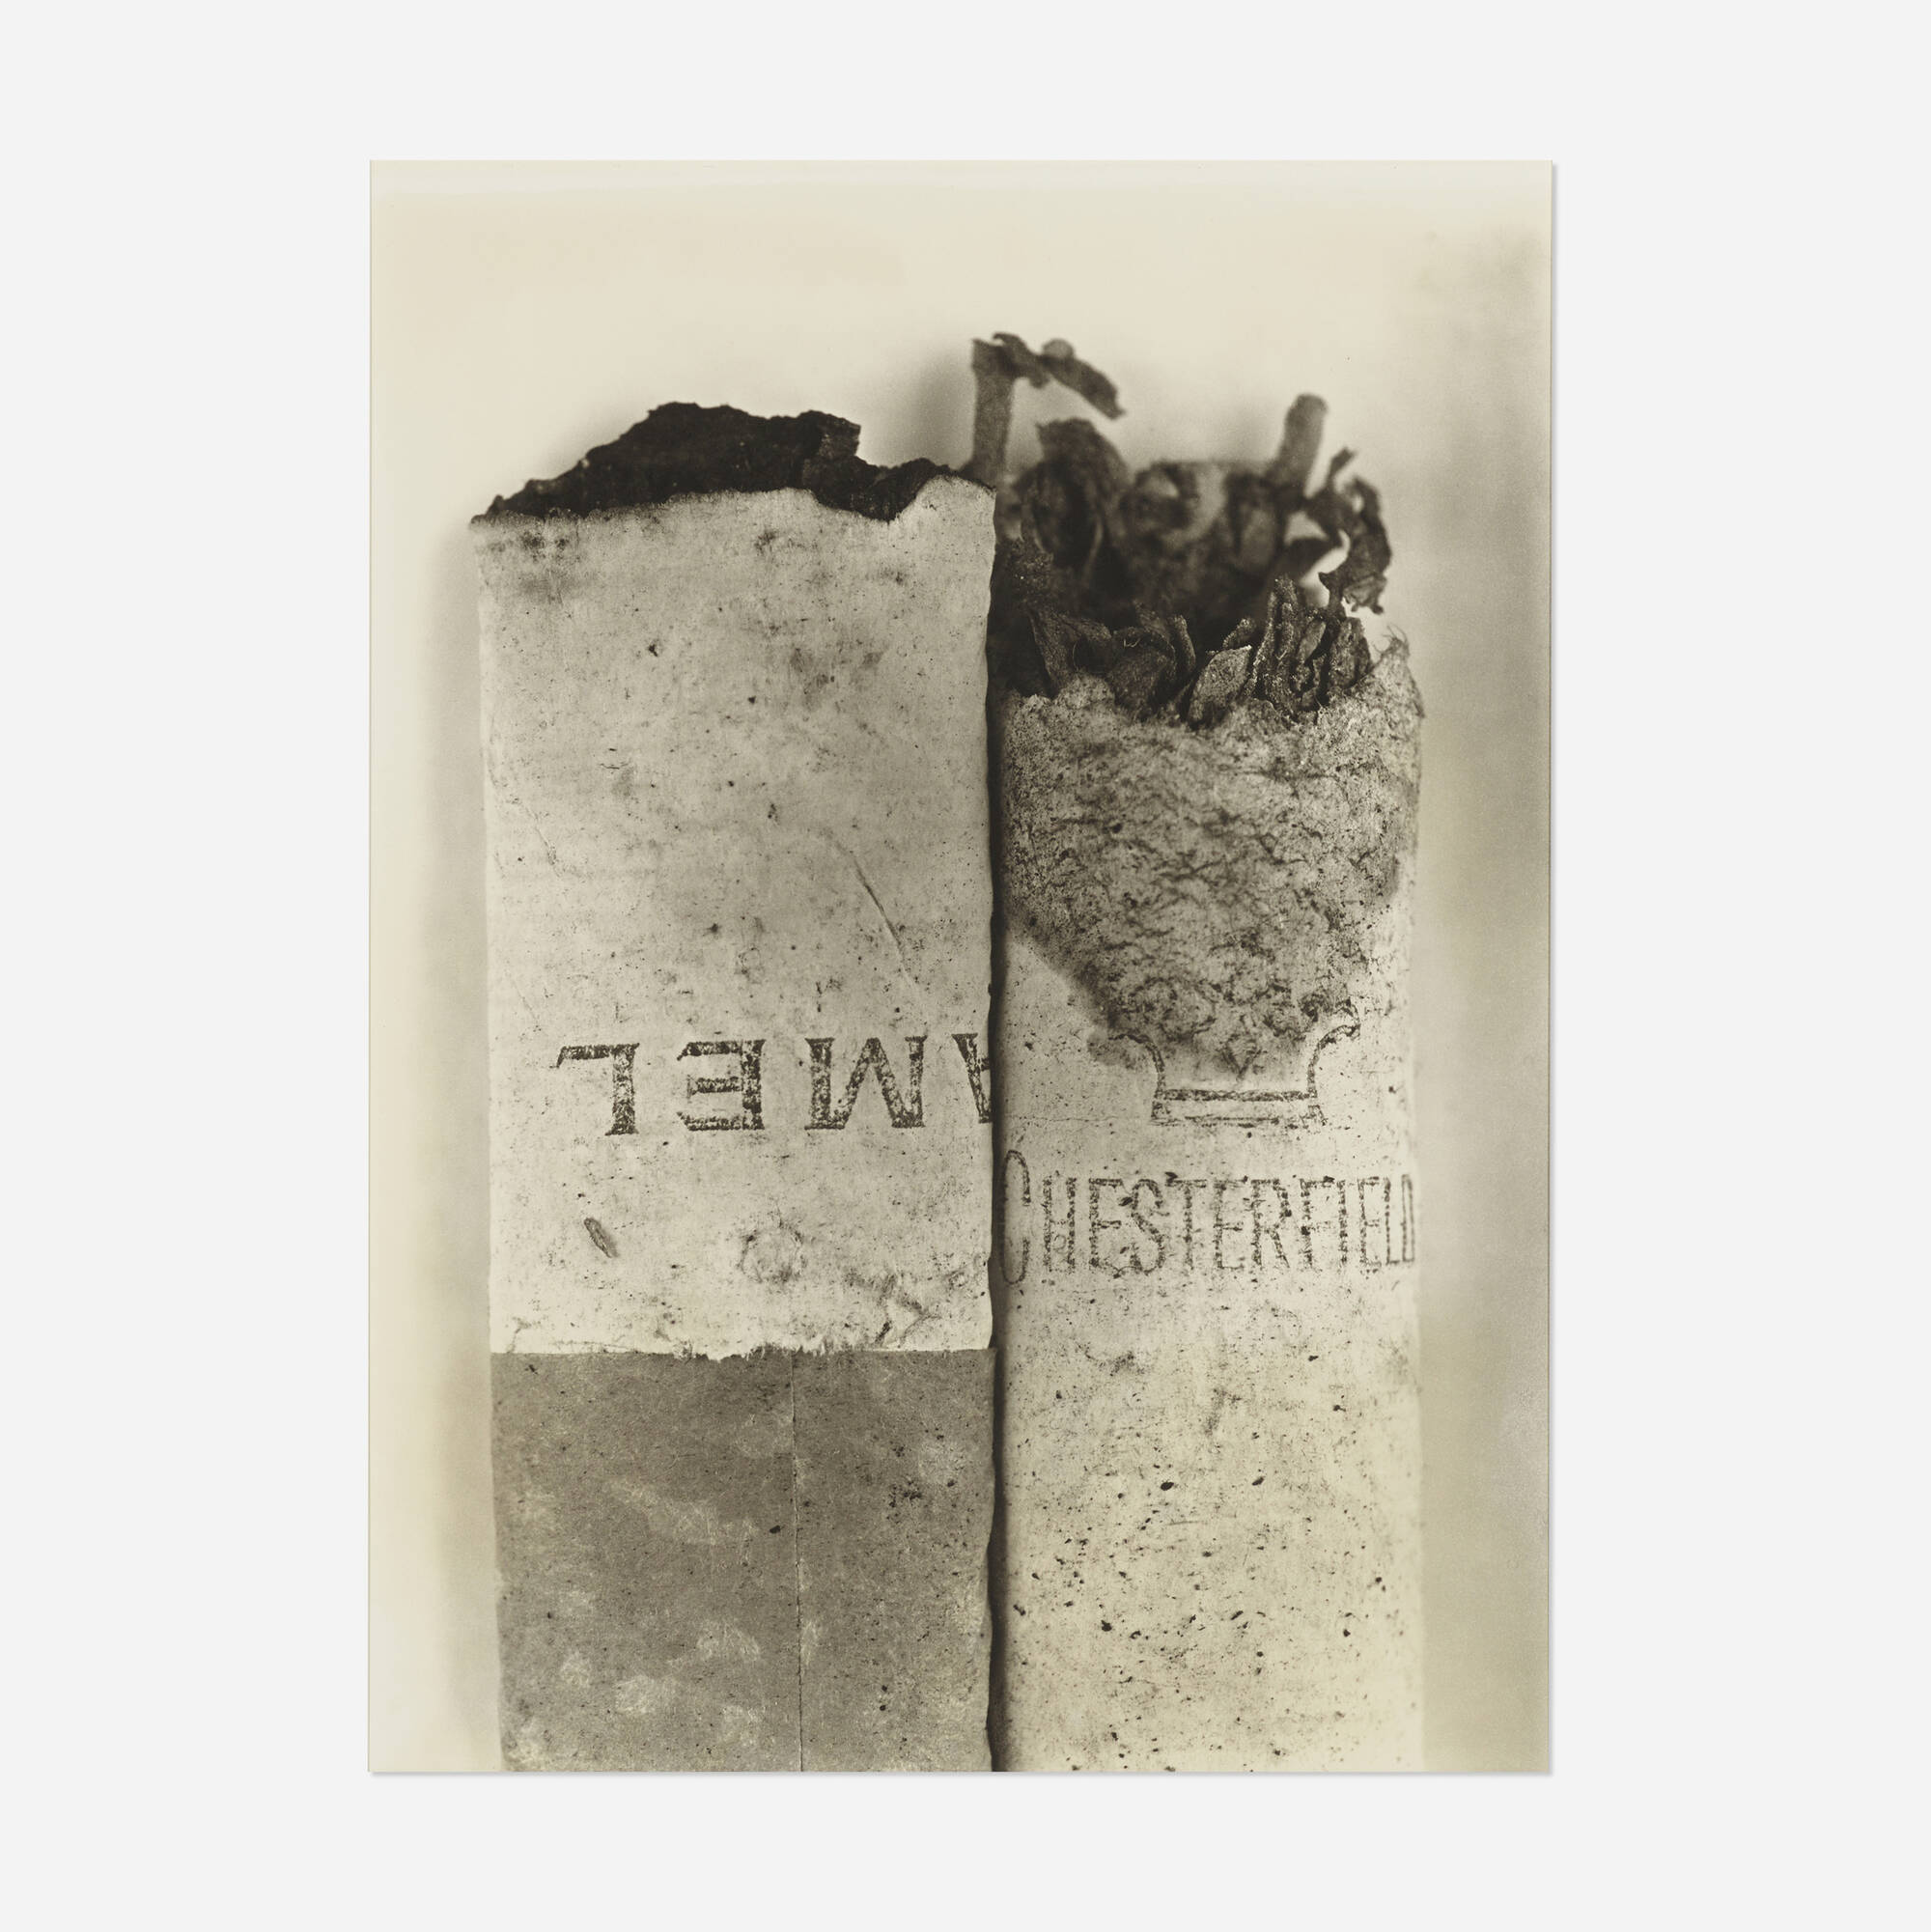 108: IRVING PENN, Cigarette No. 37, New York < Photographs, 2